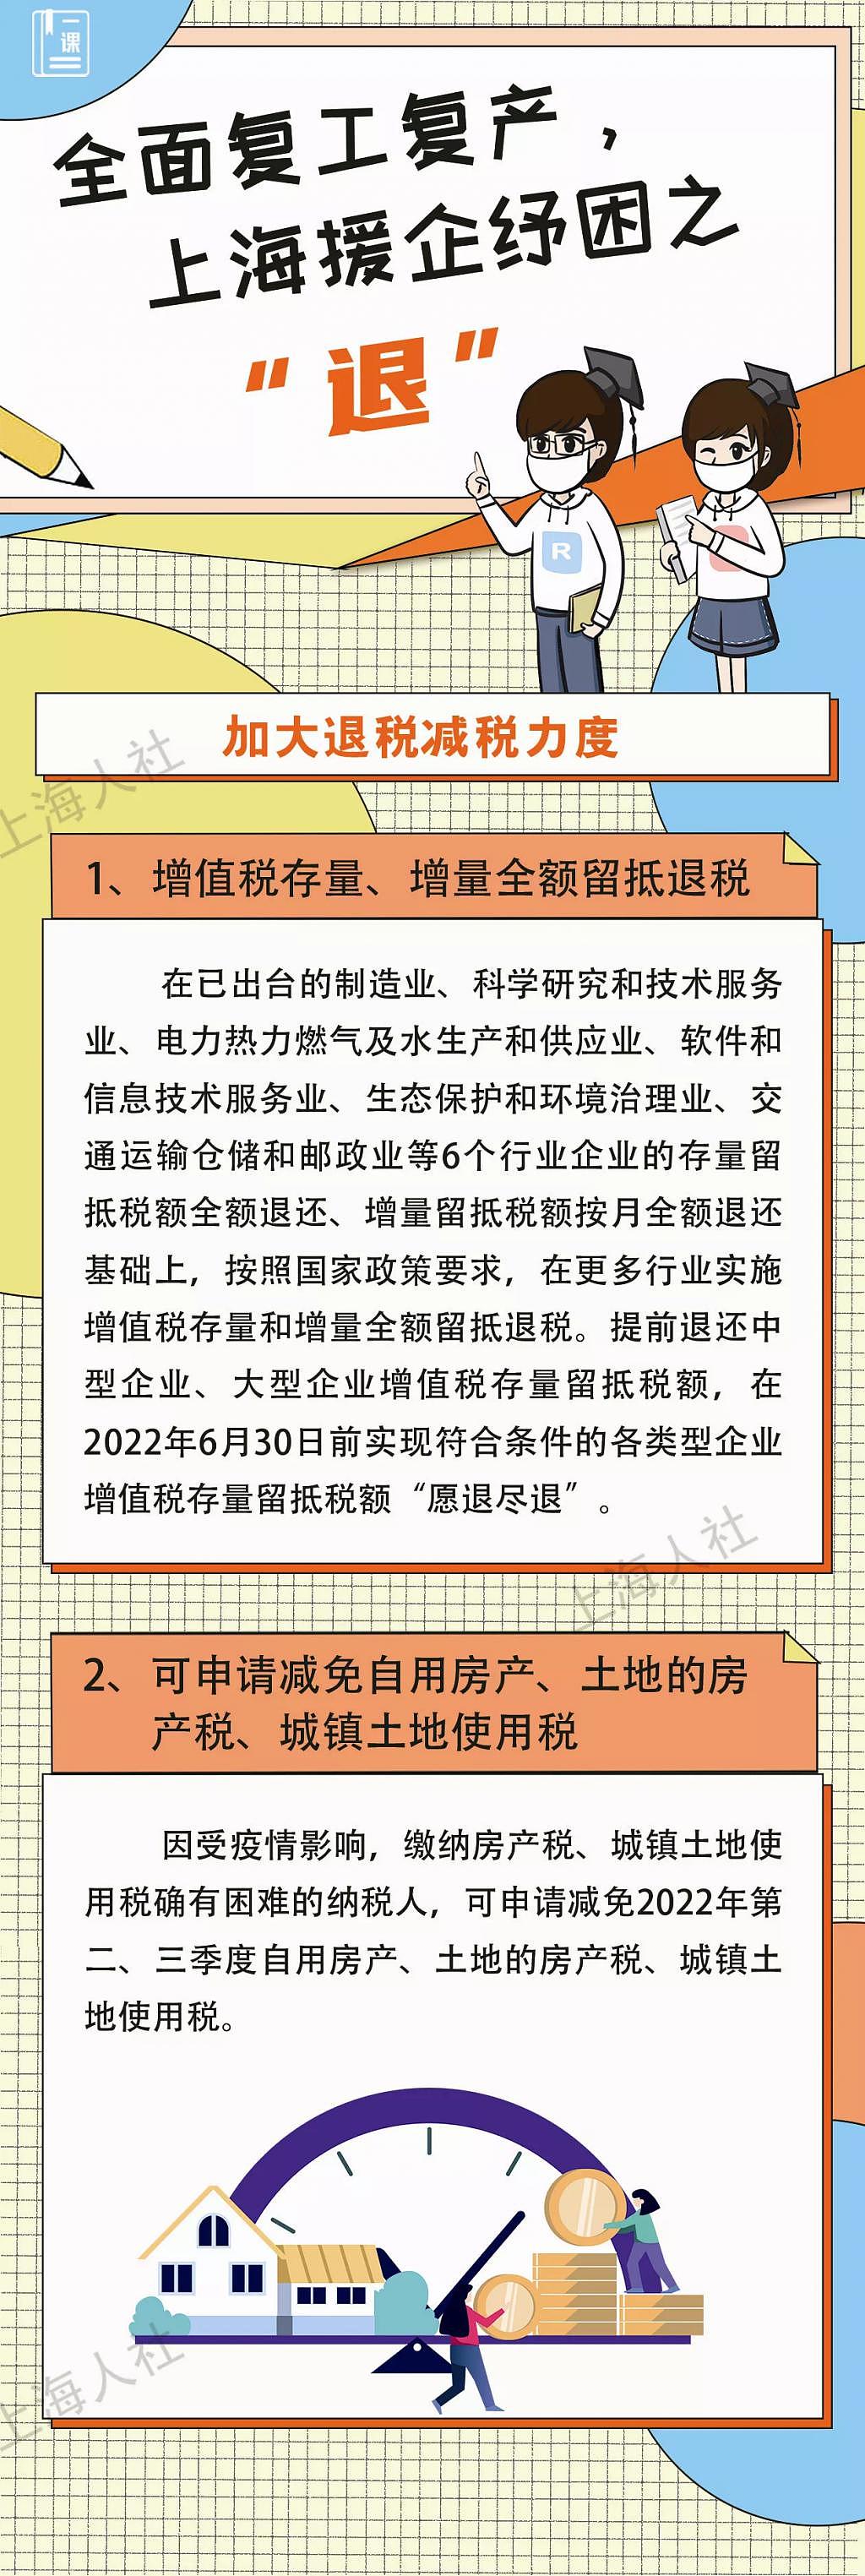 全面复工复产 上海从这五大方面援企纾困 - 4